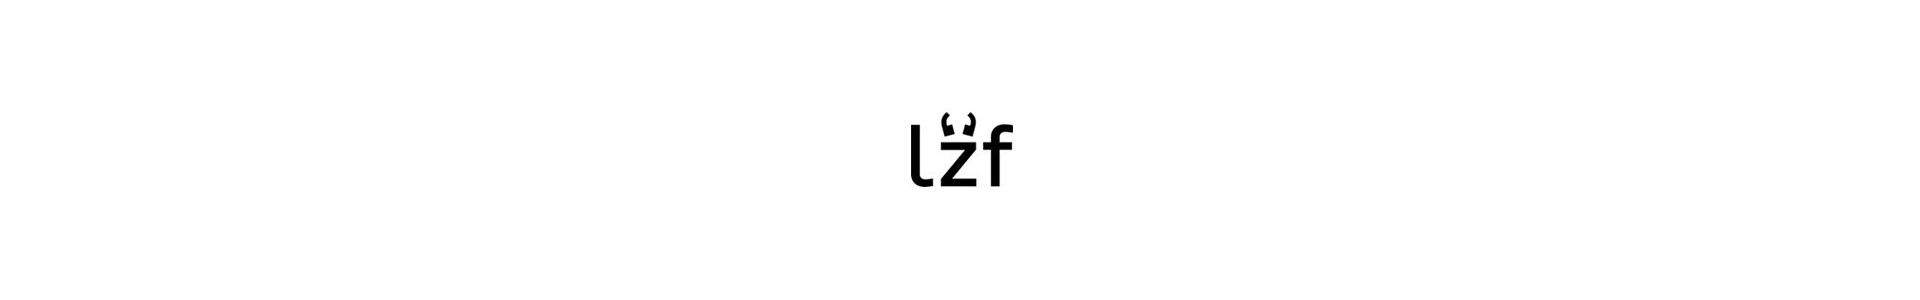 LZF Lamps: Comprar lámparas Luzifer - Muebles Lluesma